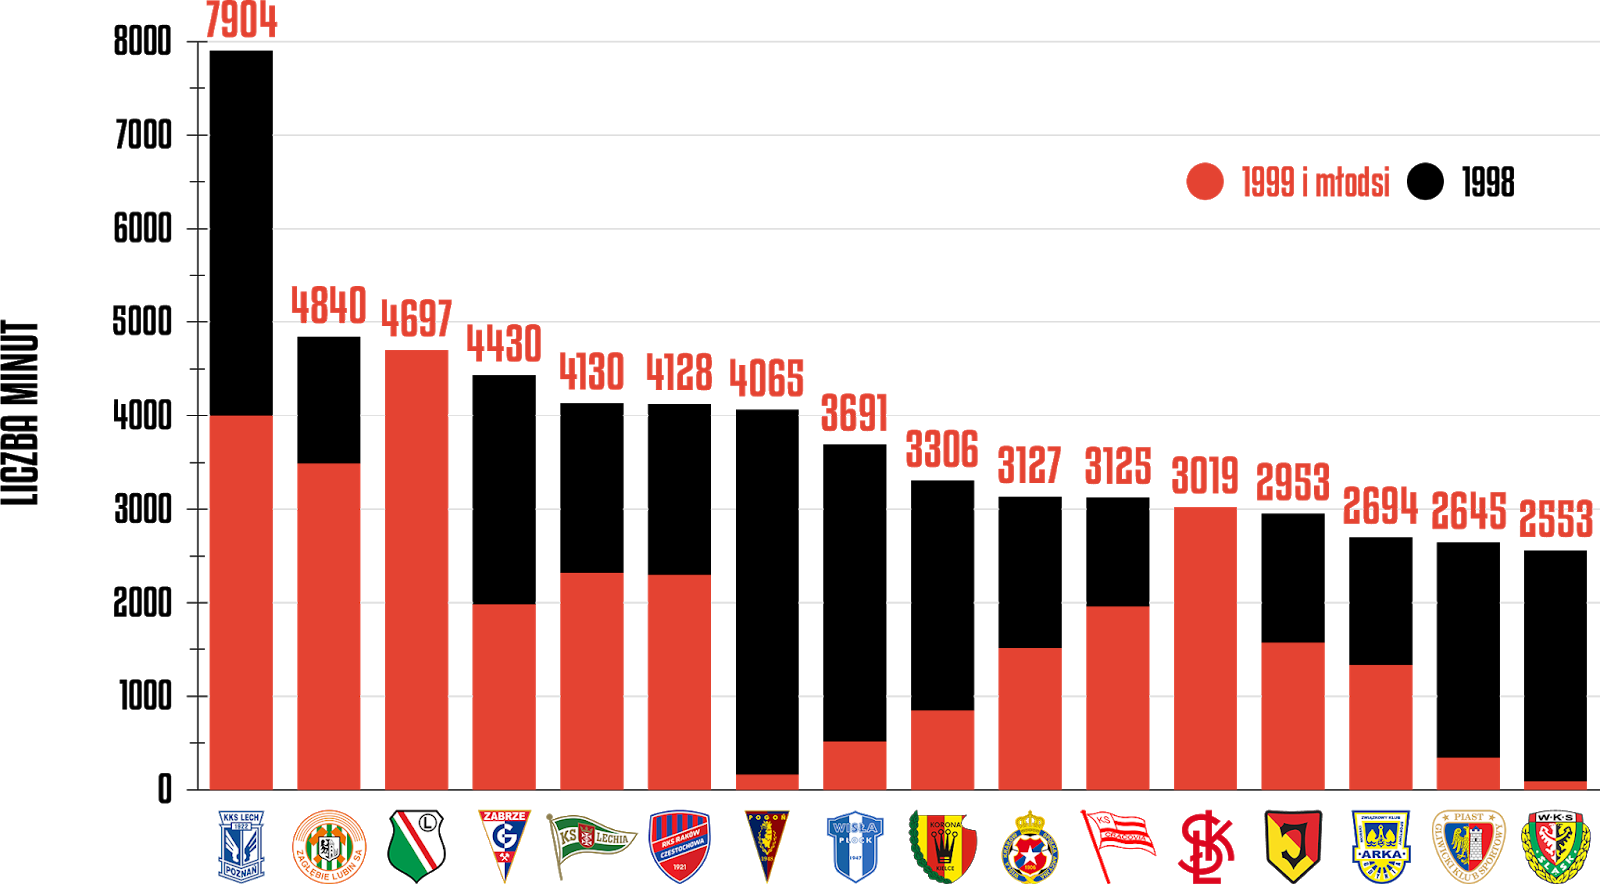 Klasyfikacja klubów pod względem rozegranych minut przez młodzieżowców po 28 kolejkach PKO Ekstraklasy<br><br>Źródło: Opracowanie własne na podstawie ekstrastats.pl<br><br>graf. Bartosz Urban